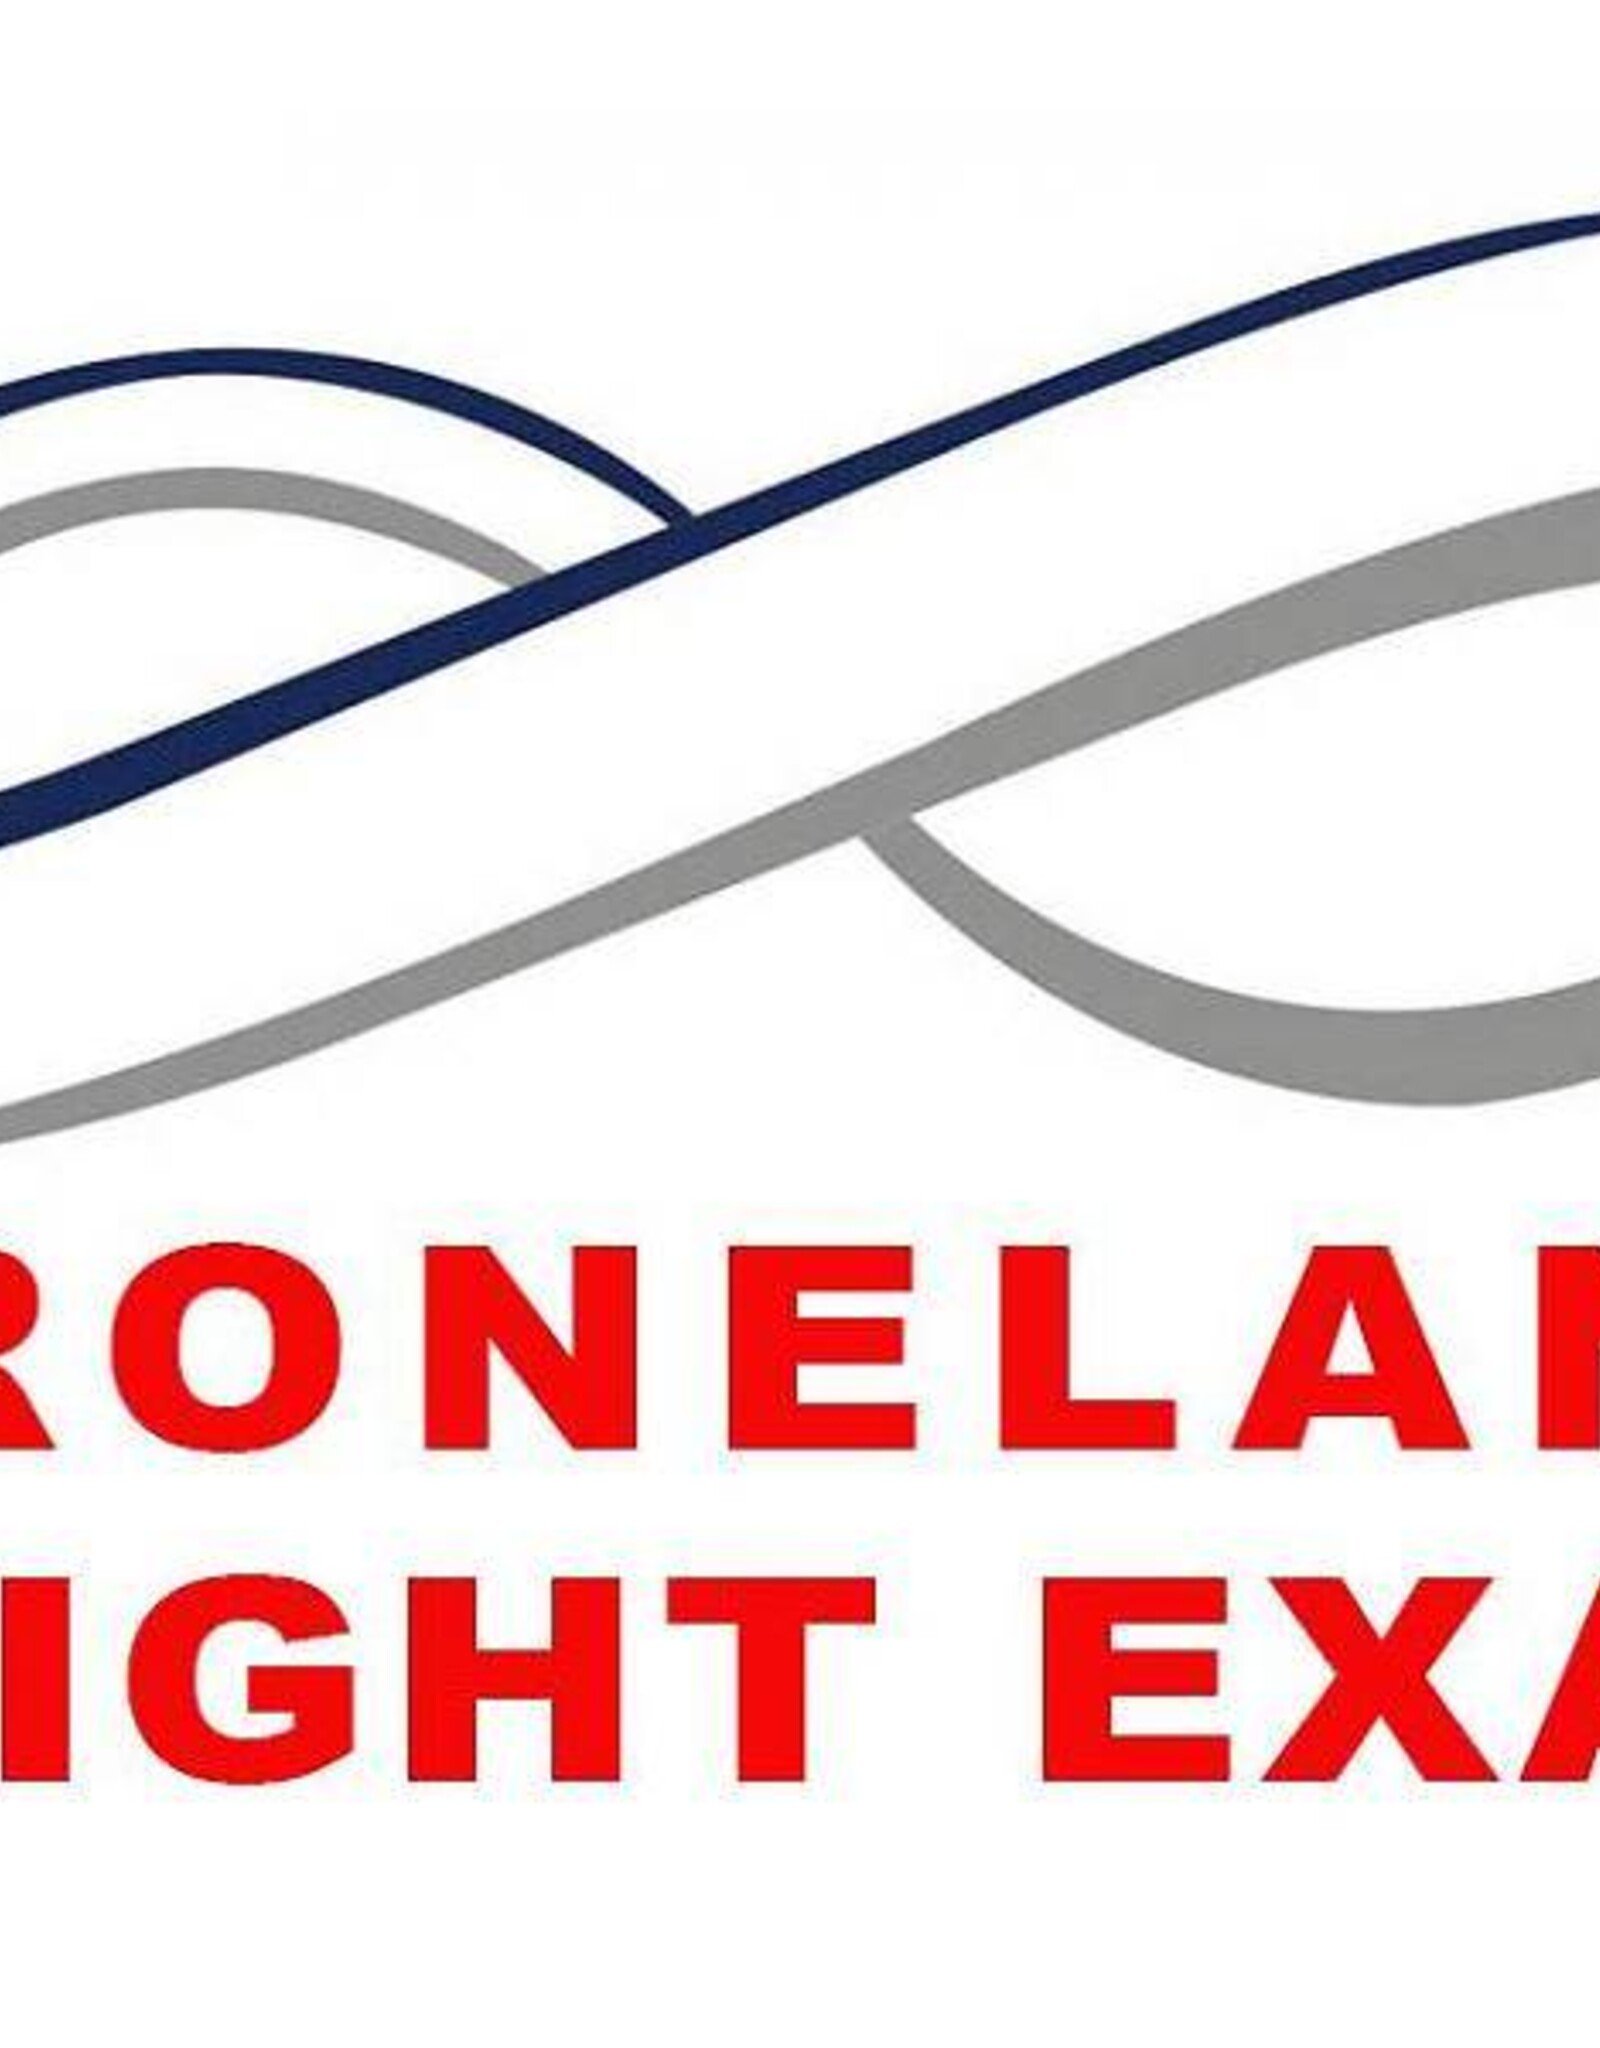 DroneLand Praktijkexamen Op Onze Testlocatie + Faciliteiten